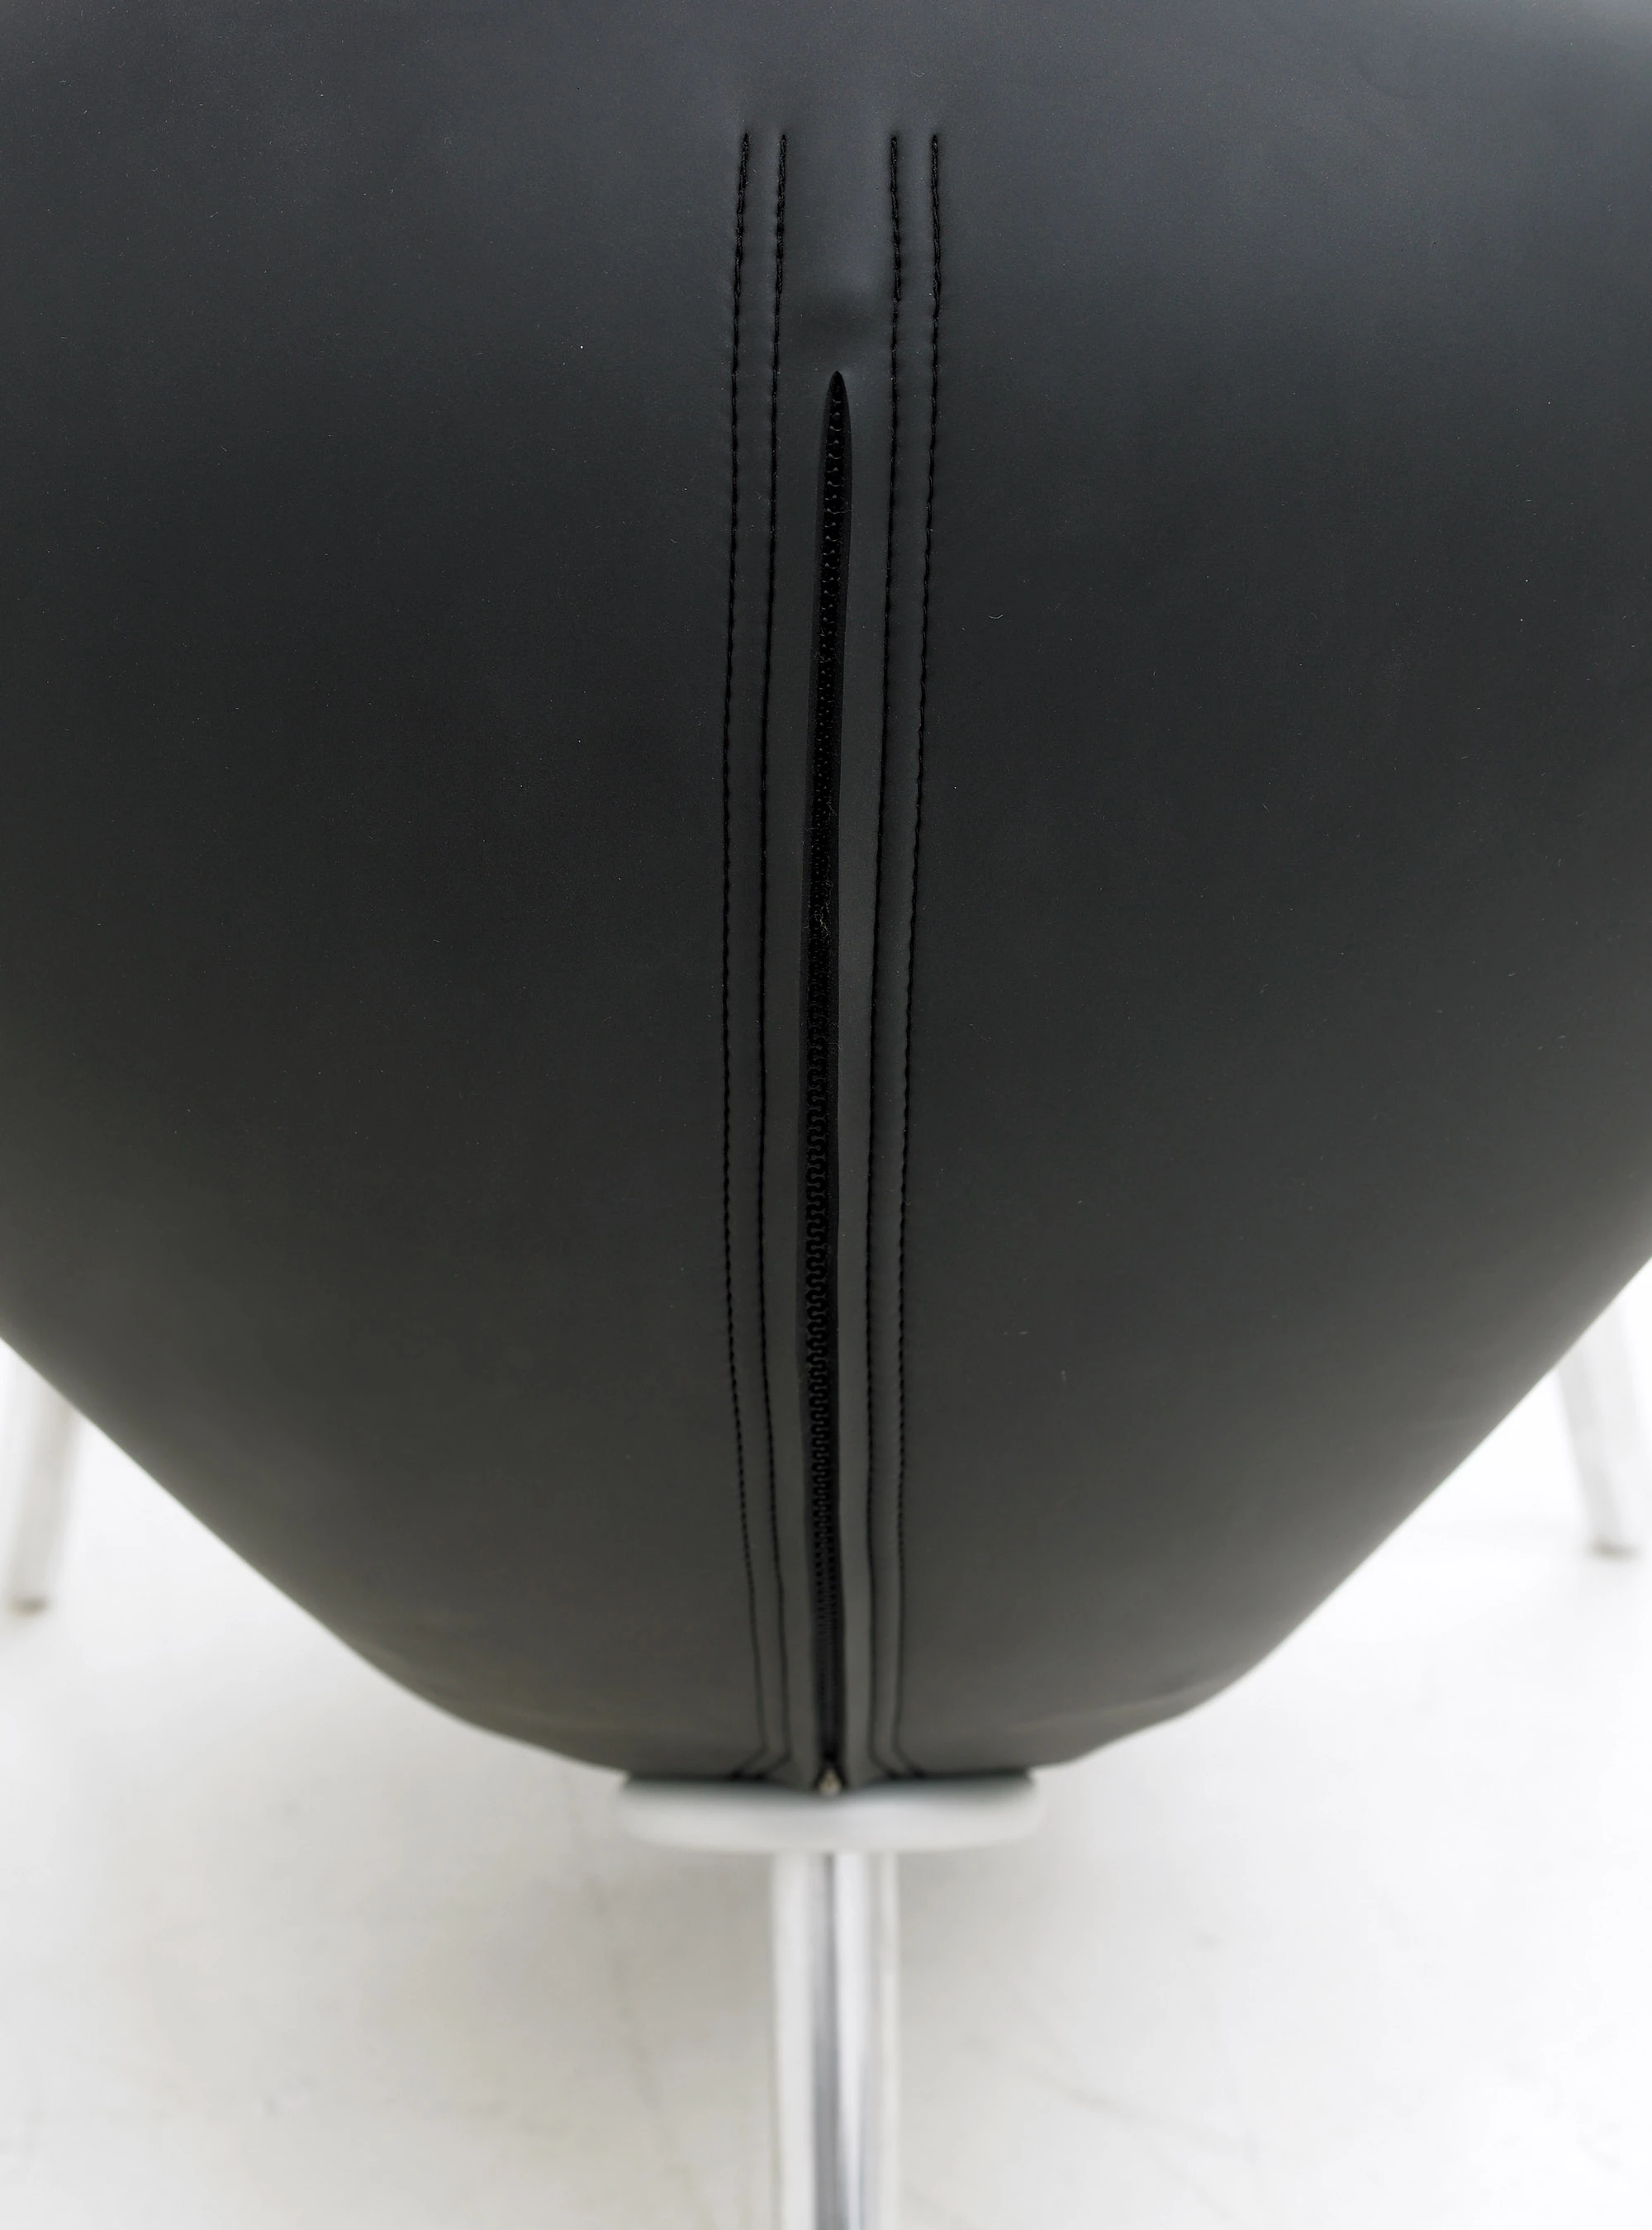 Embryo Chair - Marc Newson - Chair - Galerie kreo